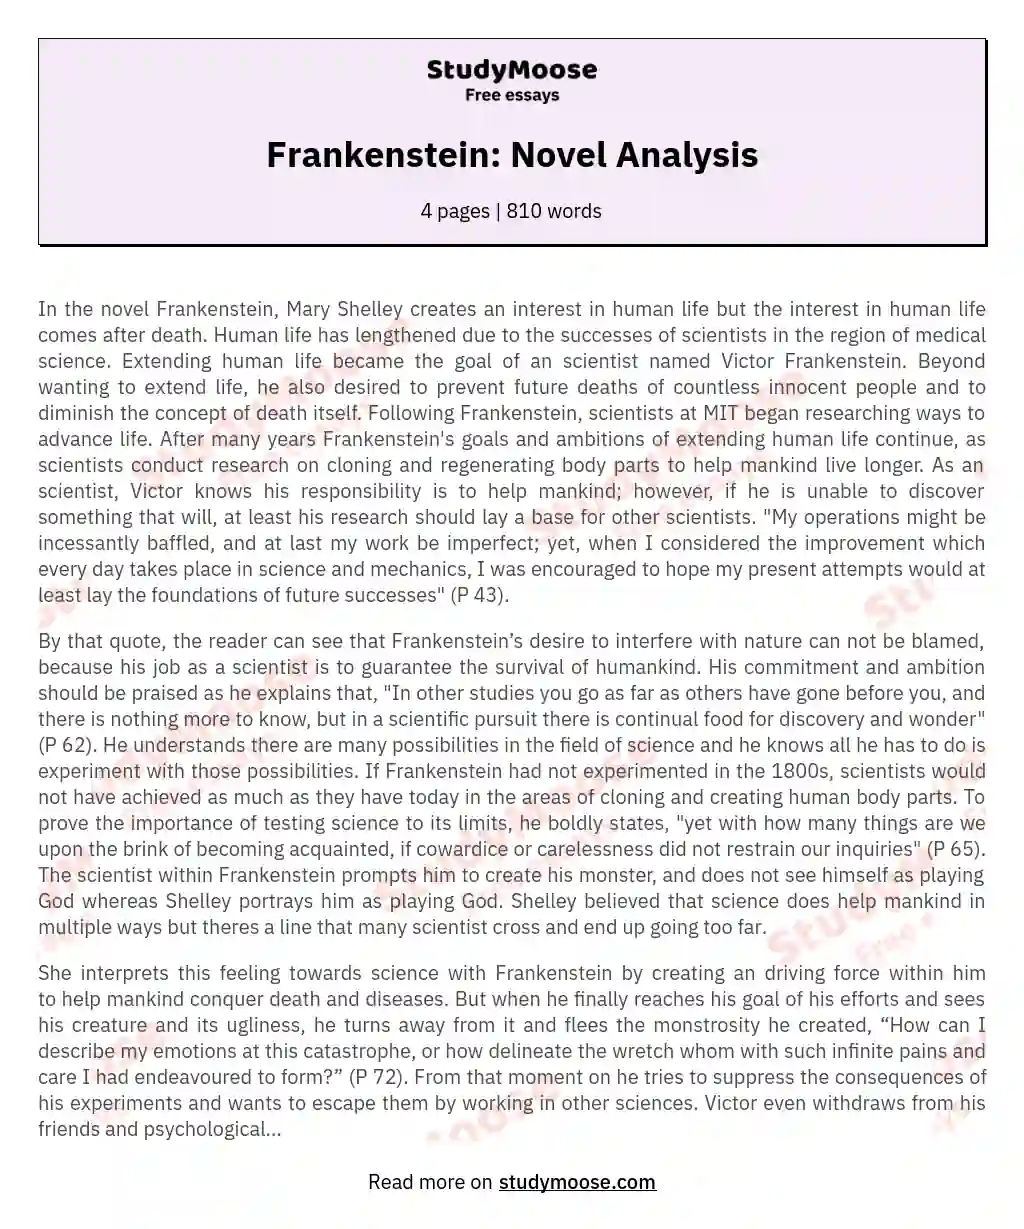 Frankenstein: Novel Analysis